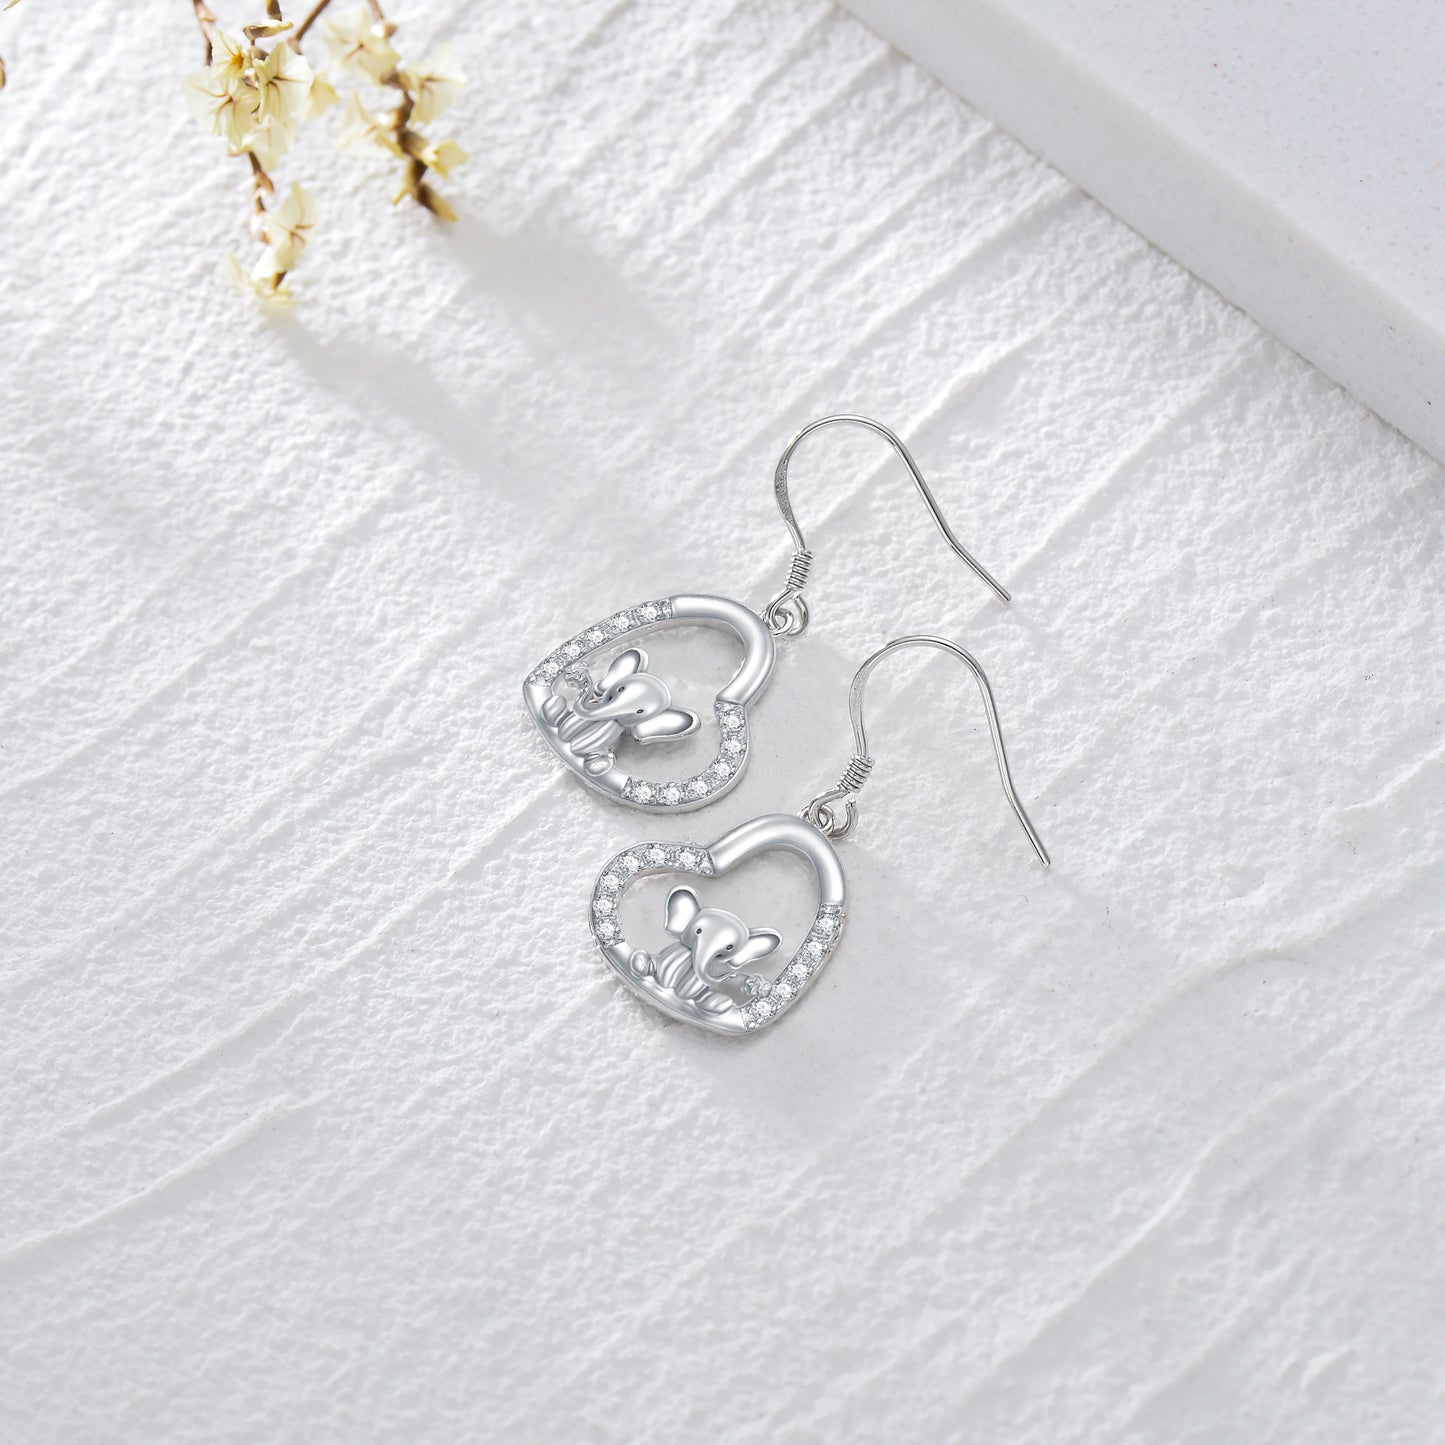 Elephant Earrings 925 Sterling Silver - Gifts for Women